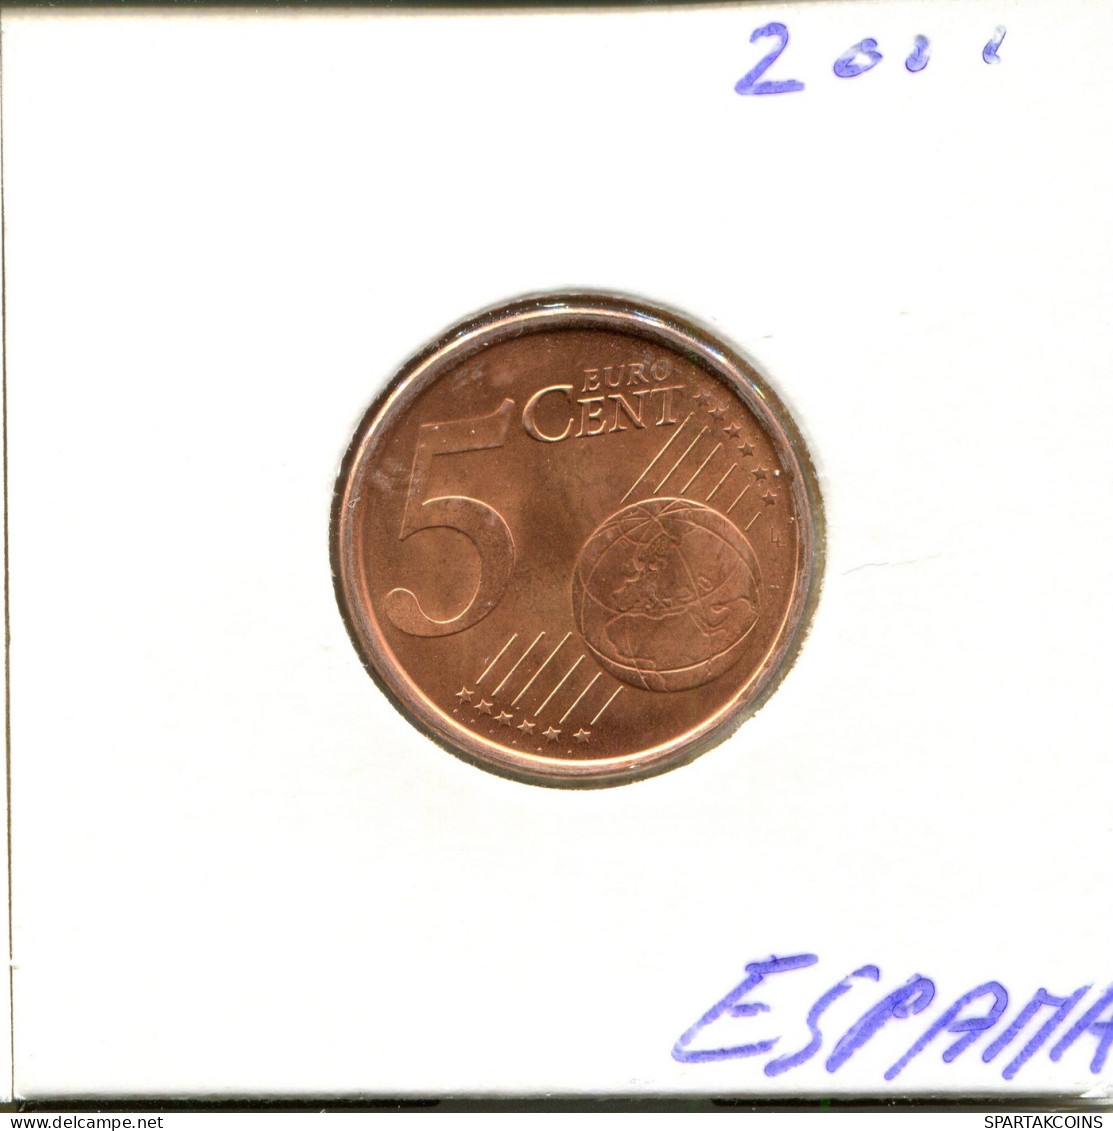 5 EURO CENTS 2001 SPAIN Coin #EU356.U.A - Spanien